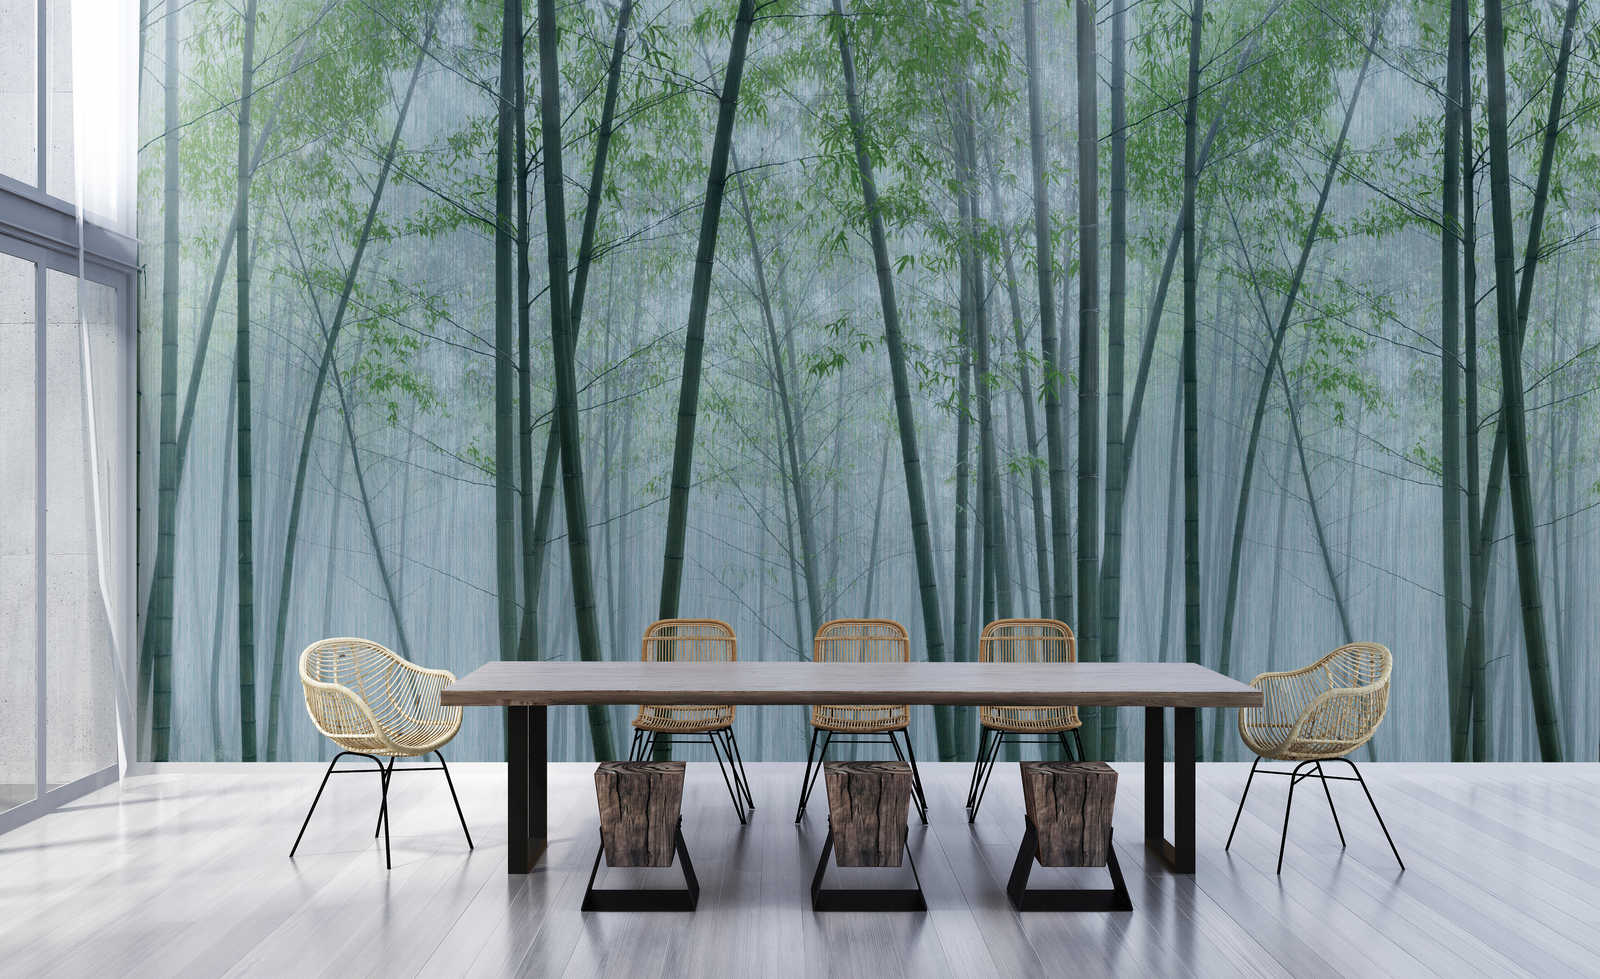             In de Bamboe 2 - Bamboebos bij dageraad Wallpaper
        